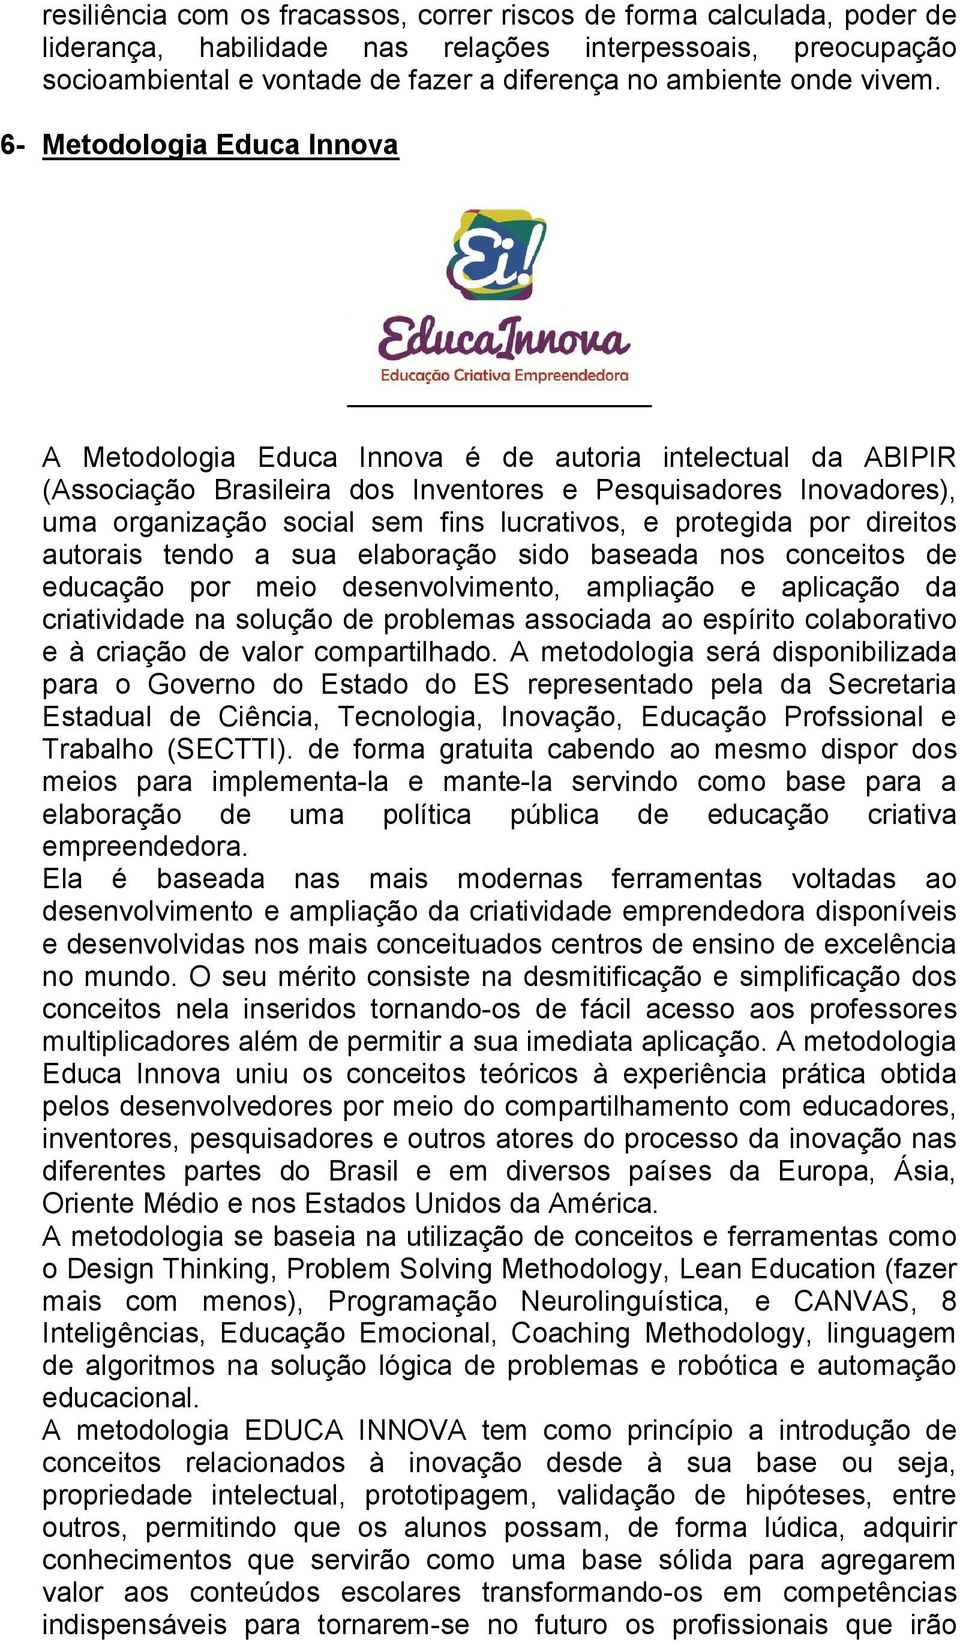 6- Metodologia Educa Innova A Metodologia Educa Innova é de autoria intelectual da ABIPIR (Associação Brasileira dos Inventores e Pesquisadores Inovadores), uma organização social sem fins